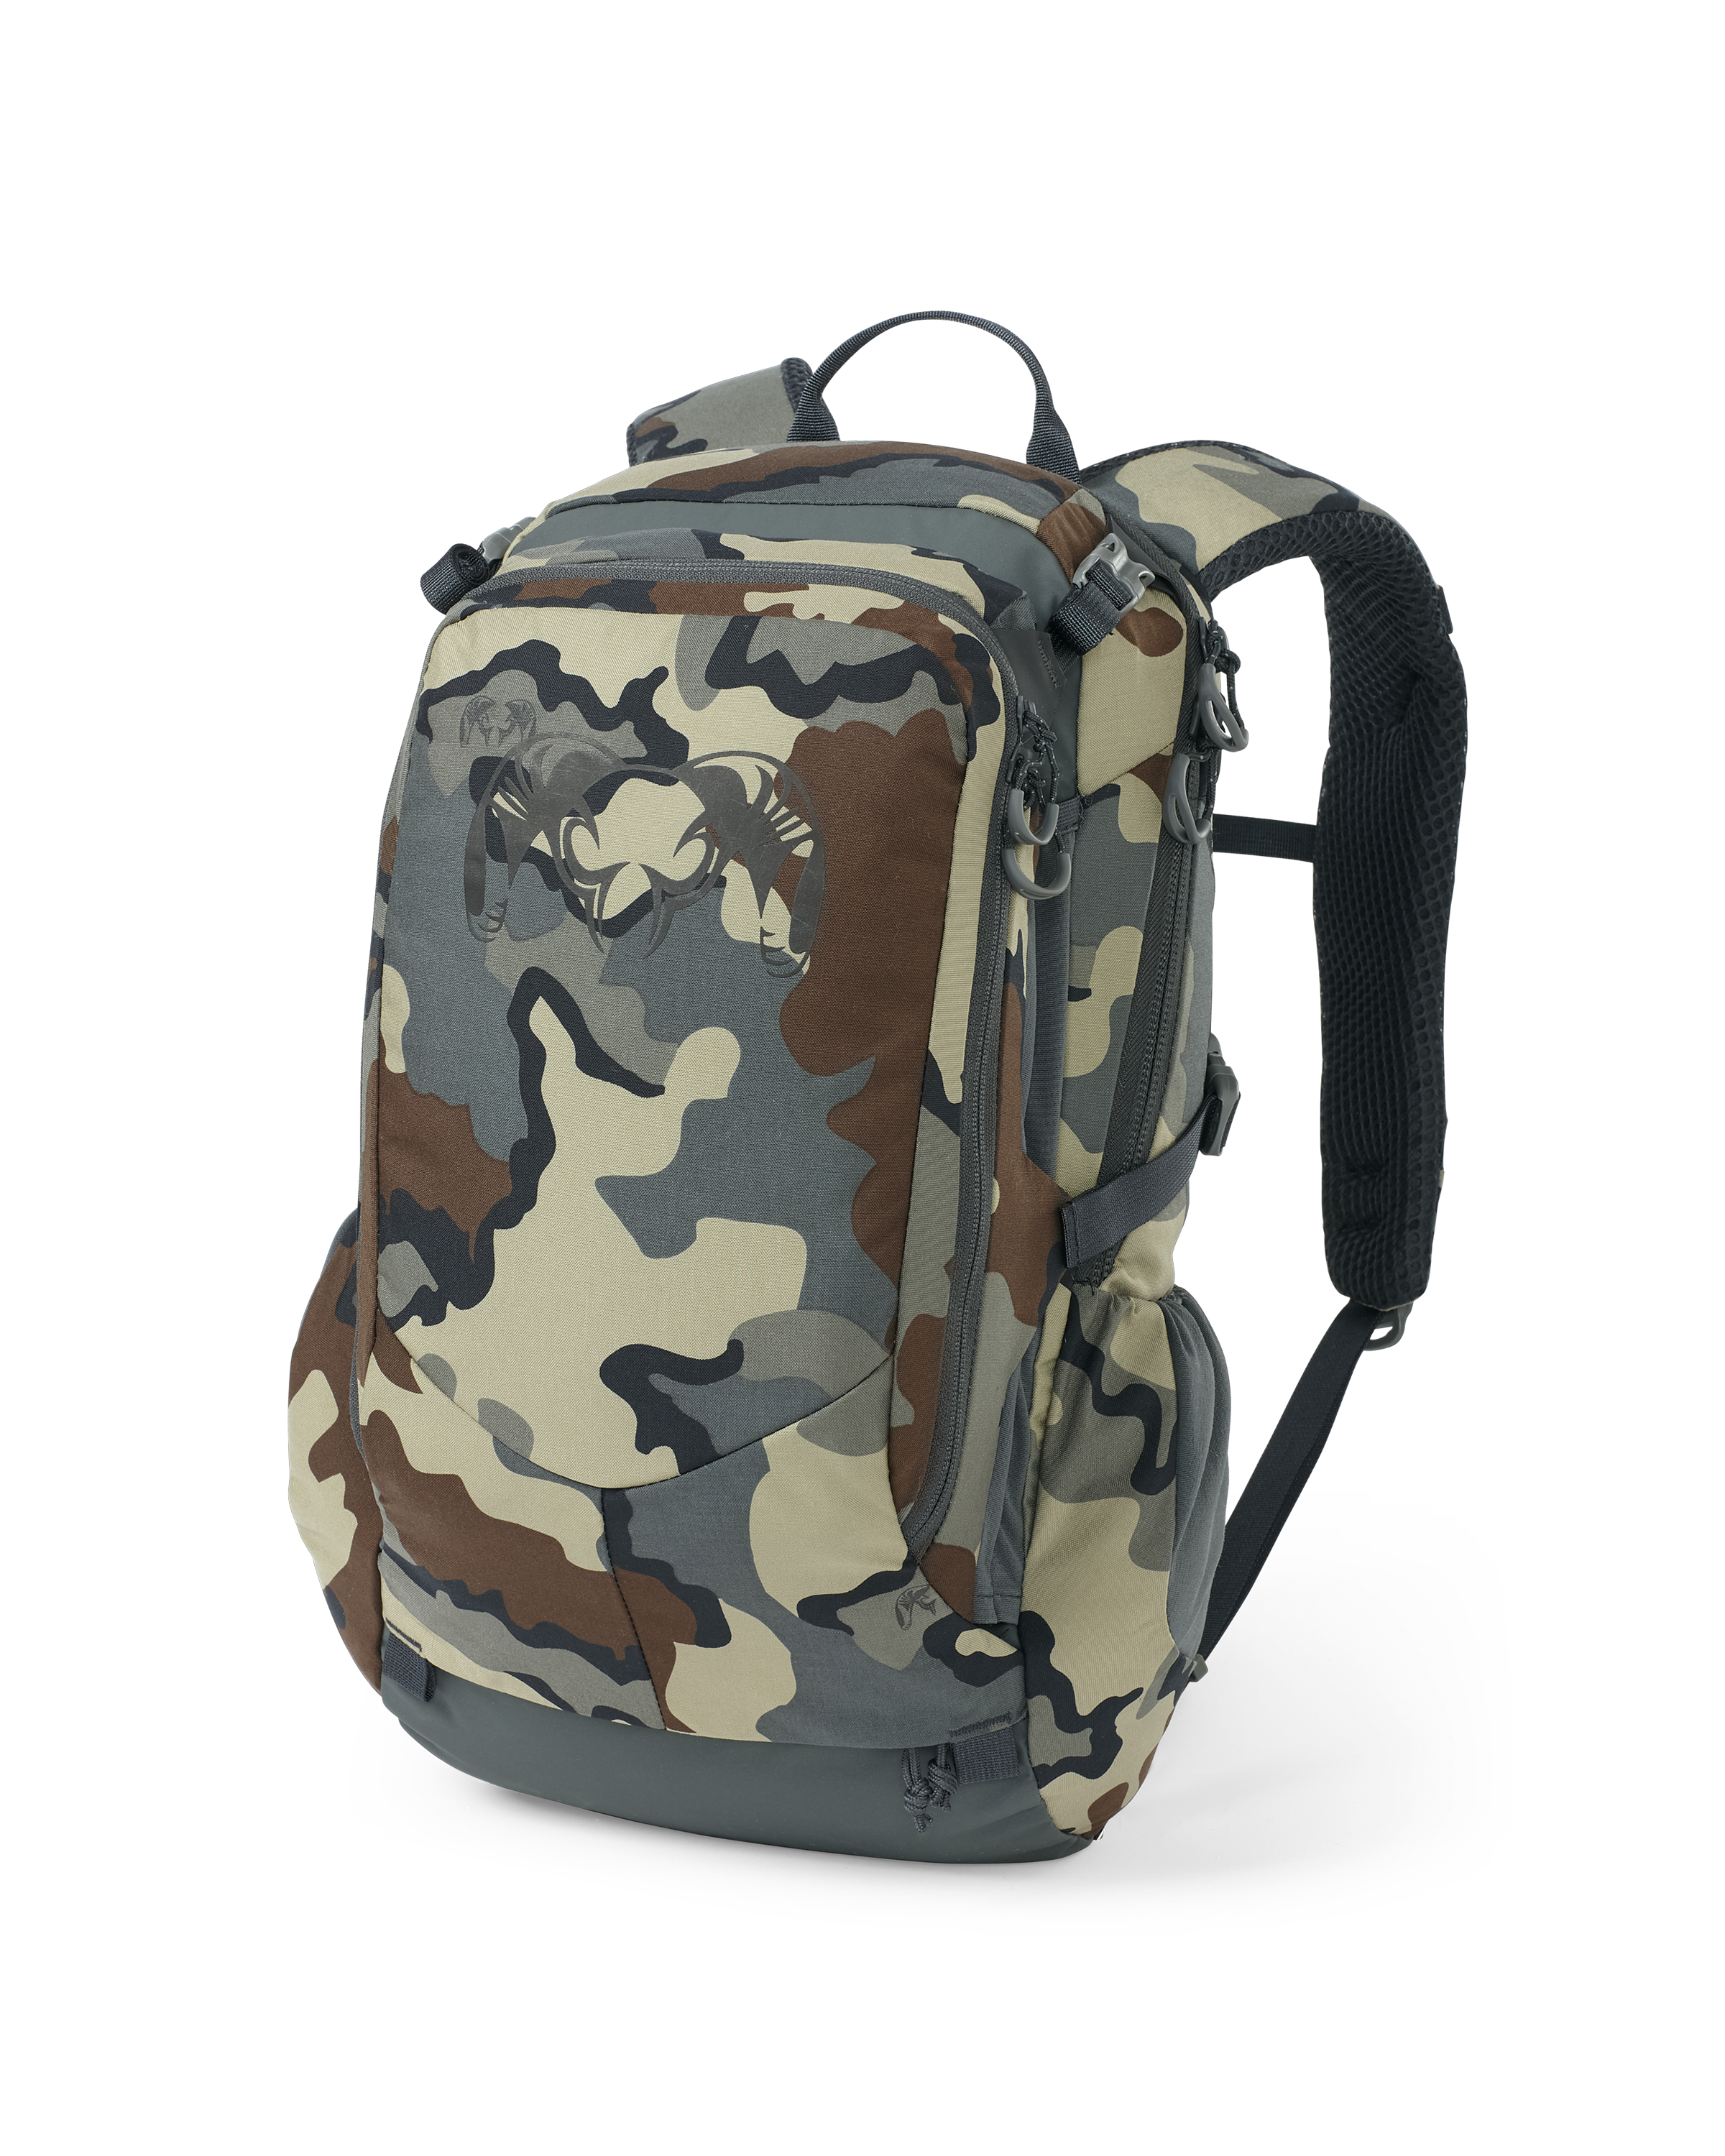 KUIU Divide 1200 Day Bag Pack in Vias Hunting Pack